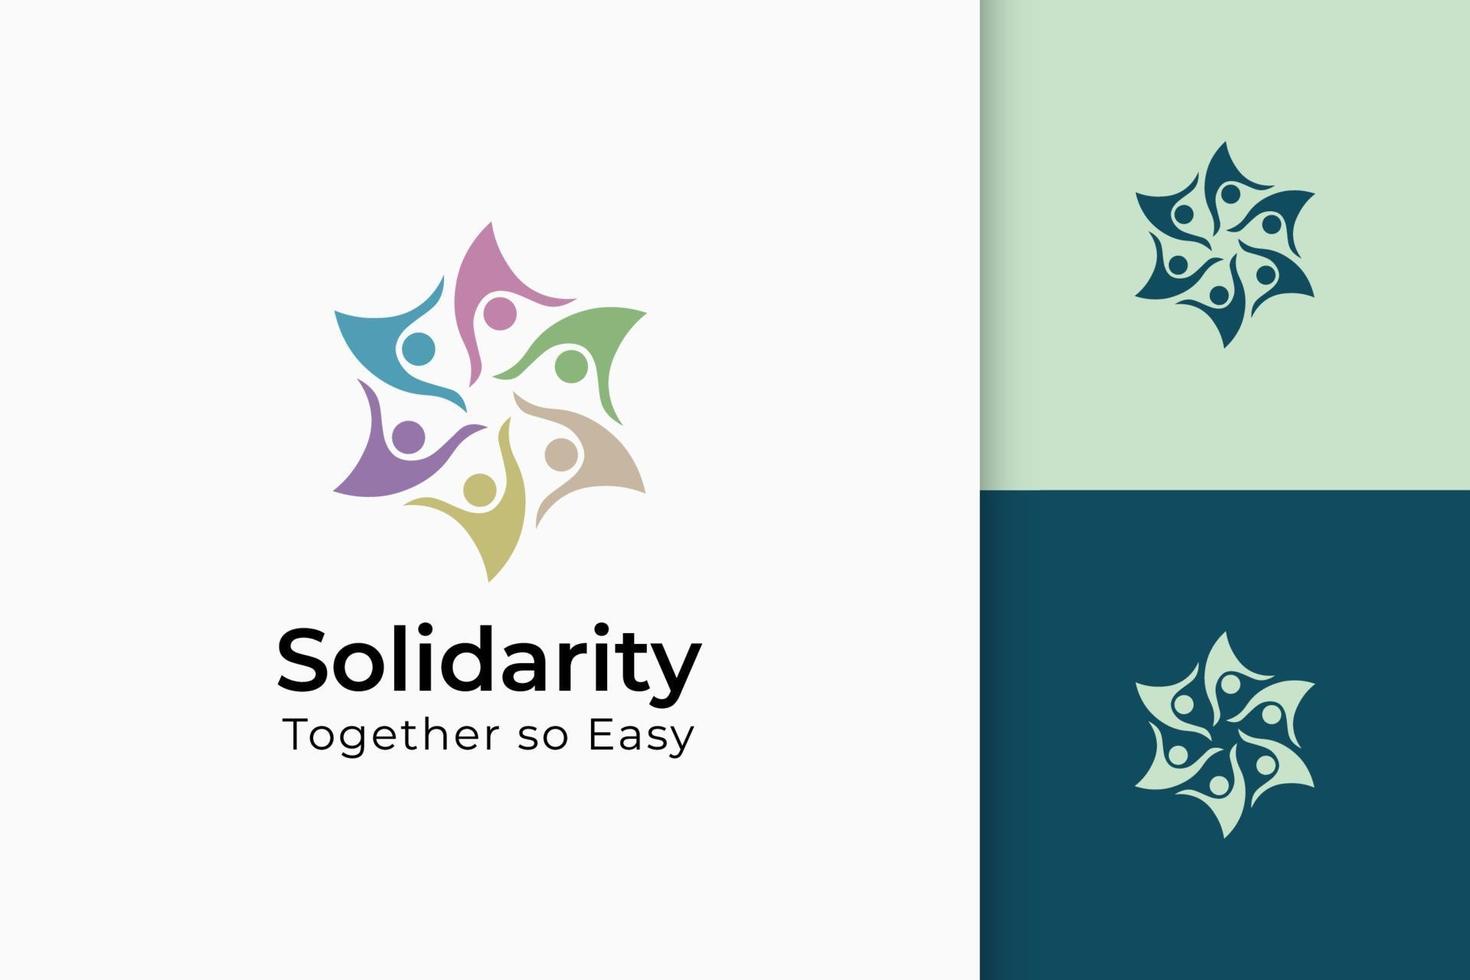 välgörenhet eller tillsammans logotyp i handen och solen representerar fred eller solidaritet vektor